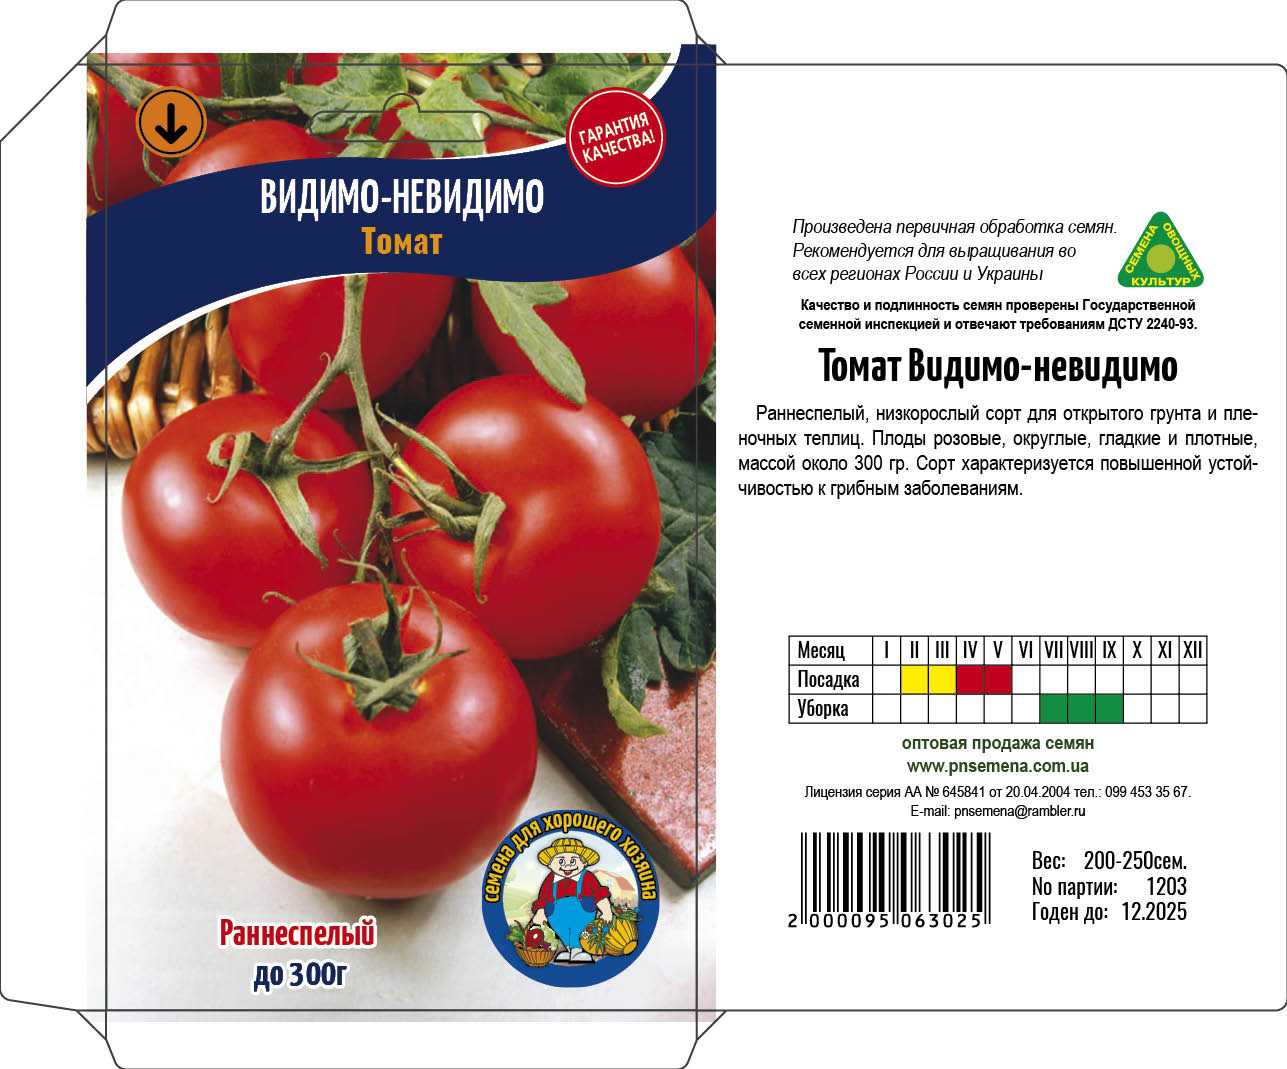 Томат видимо-невидимо: характеристика и описание сорта, видео и фото помидоров, отзывы тех кто сажал семена от фирмы сибирский сад об их урожайности